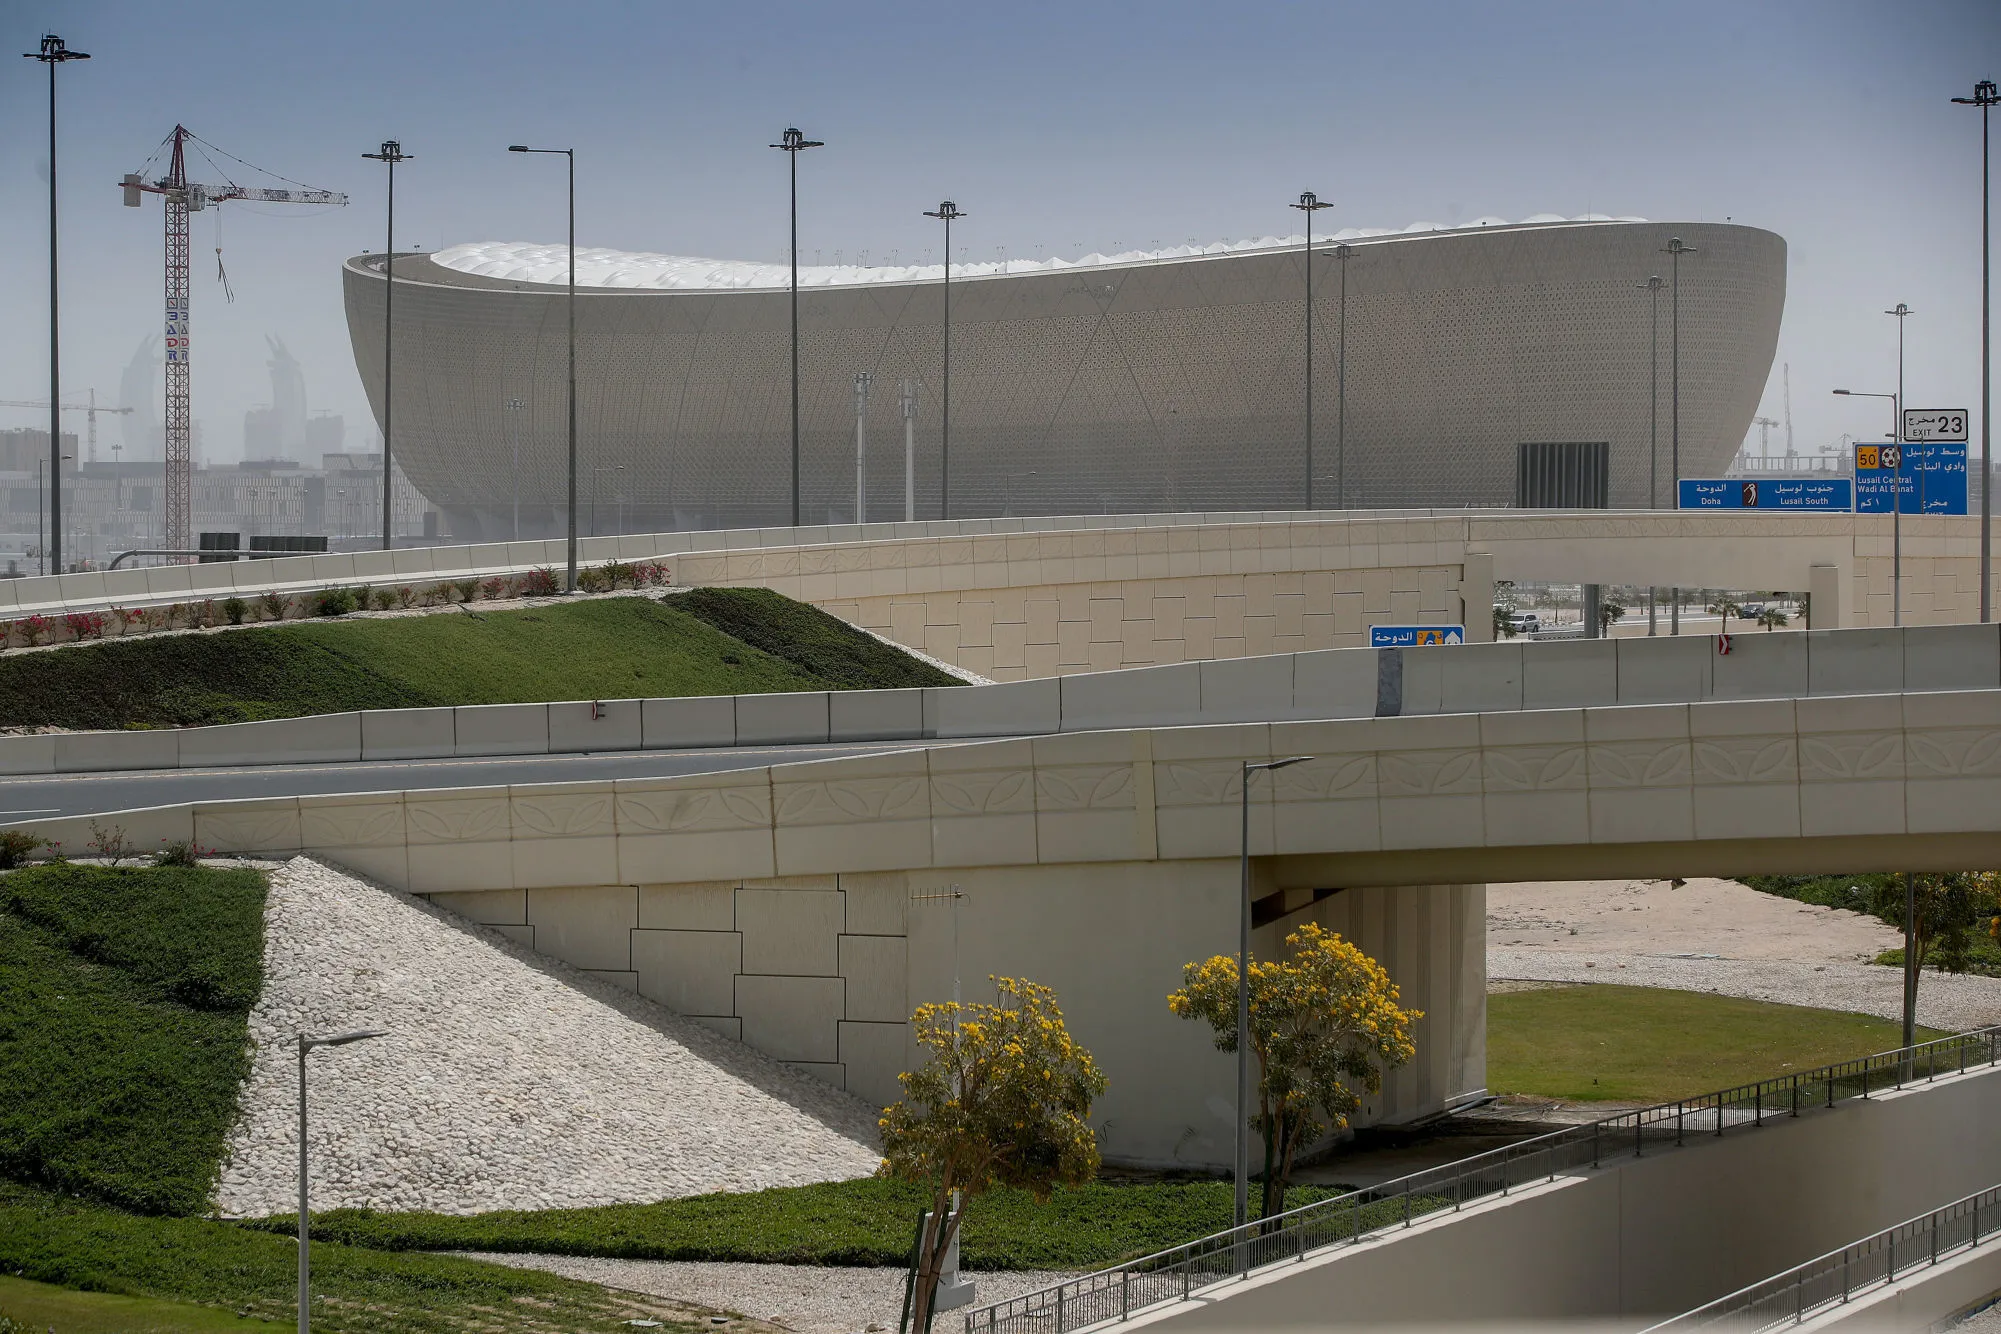 Pénurie d&rsquo;eau, air conditionné en panne : un match-test au Qatar finit en fiasco